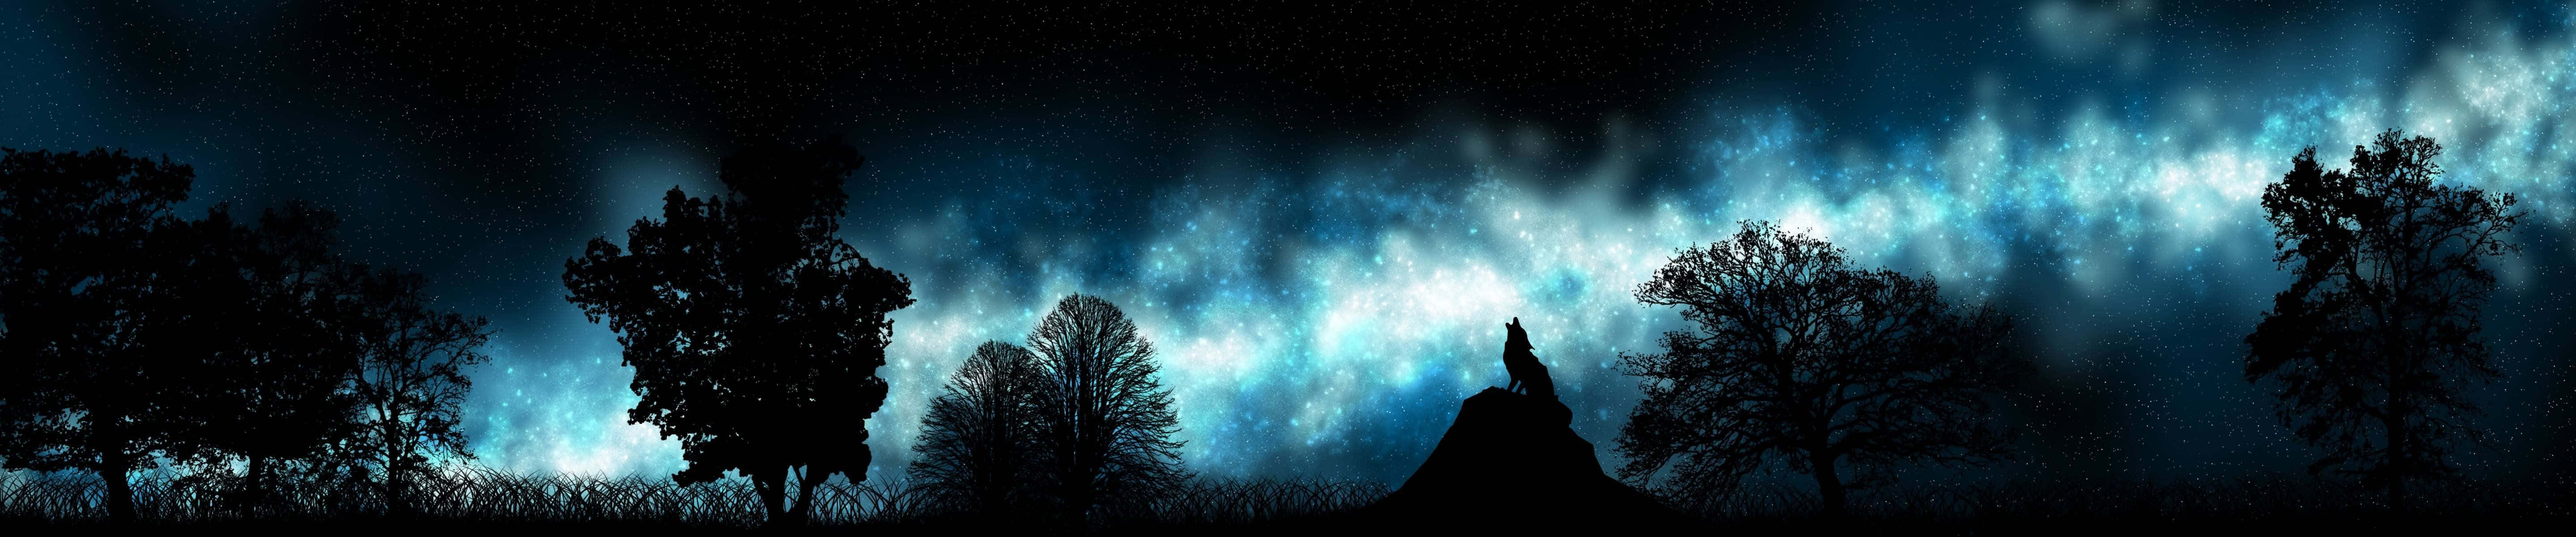 Bäumeund Sterne Dunkel, Triple Monitor Wallpaper